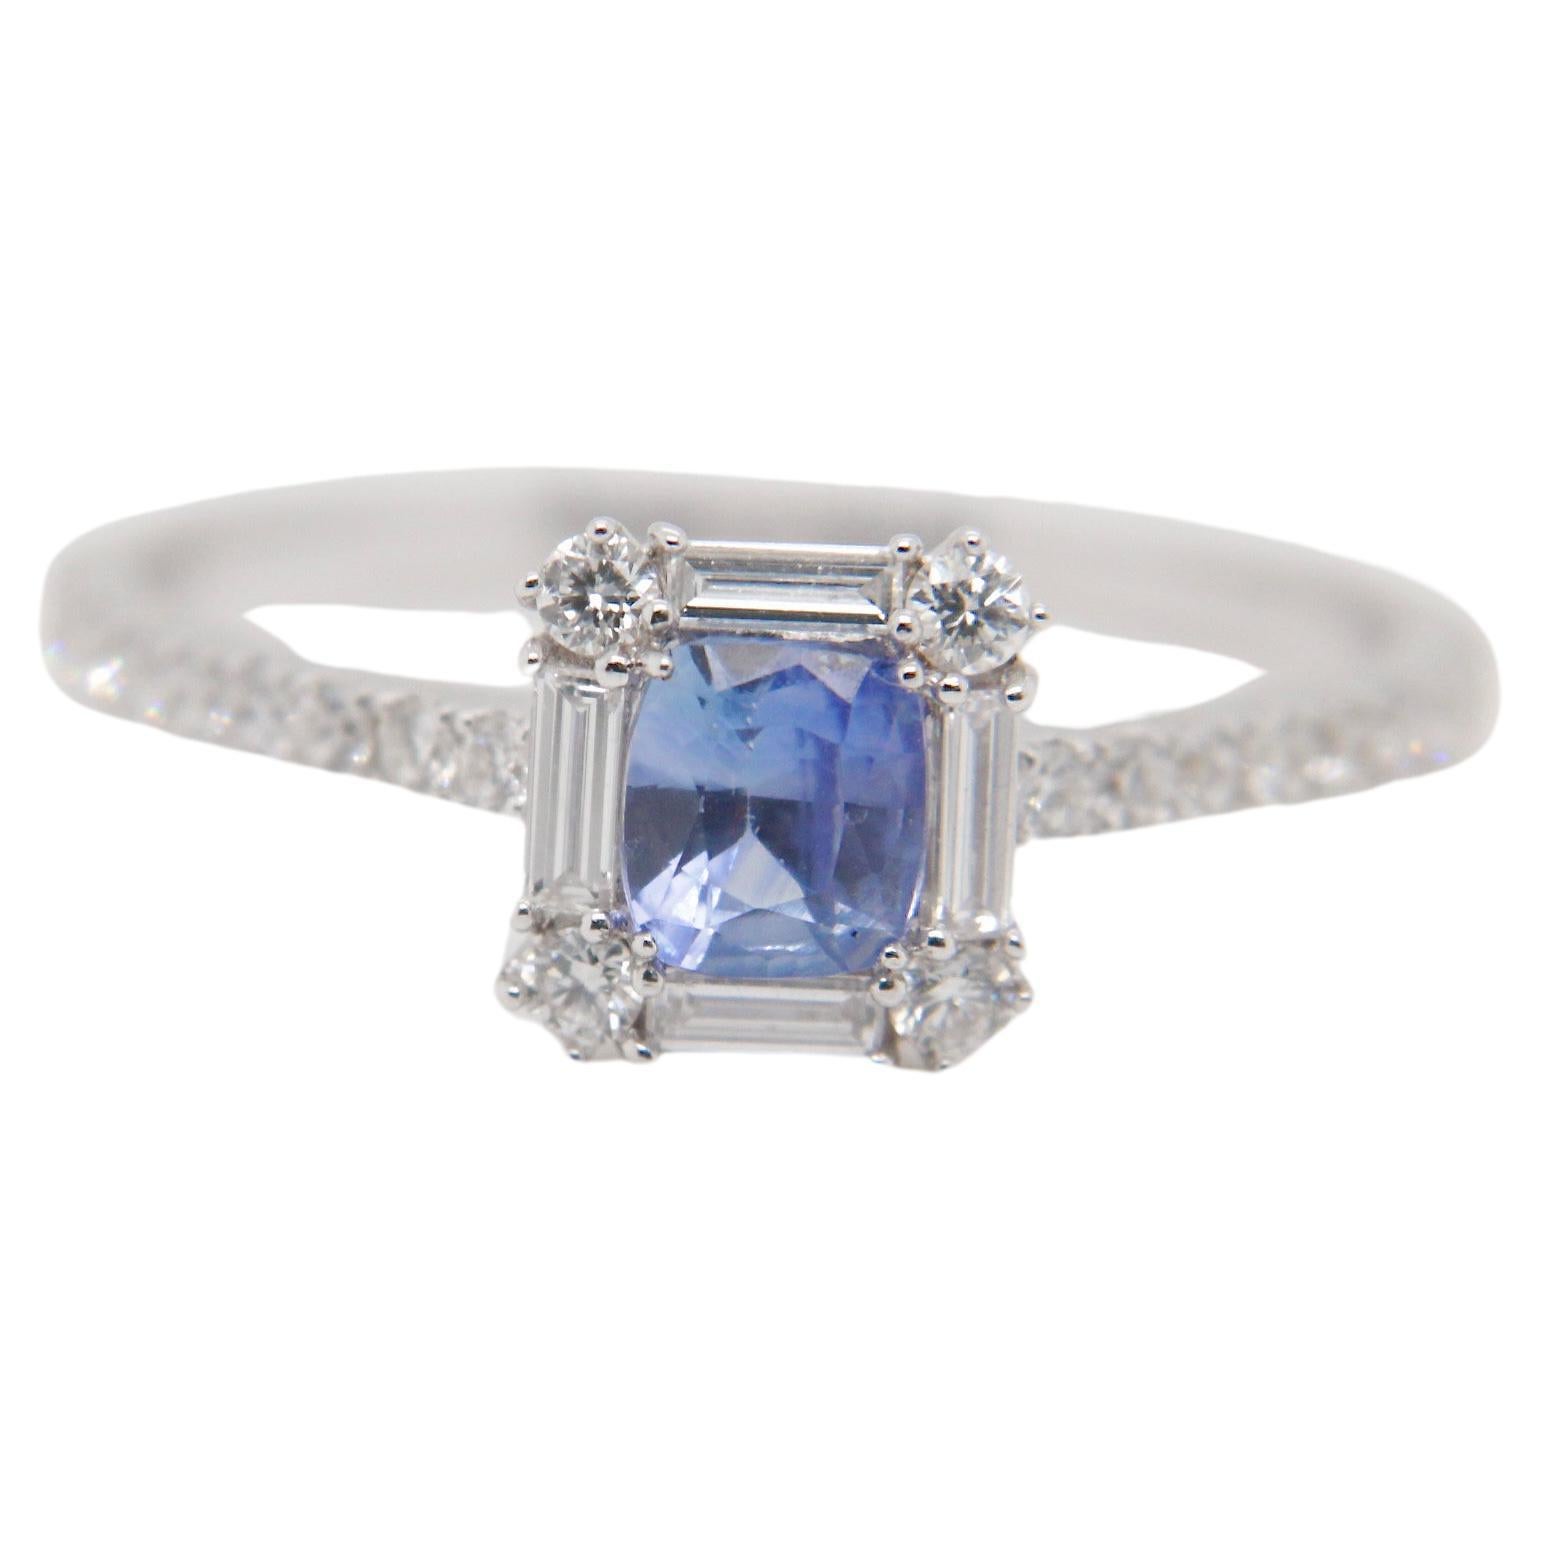 Ein brandneuer Ring mit blauem Saphir und Diamanten von Rewa Jewellery. Eines unserer meistverkauften Designs ist jetzt auch mit einem Kashmir-Saphir erhältlich!

Der Edelstein hat eine himmelblaue Farbe und ist als natürlicher Saphir von 0,52 Karat